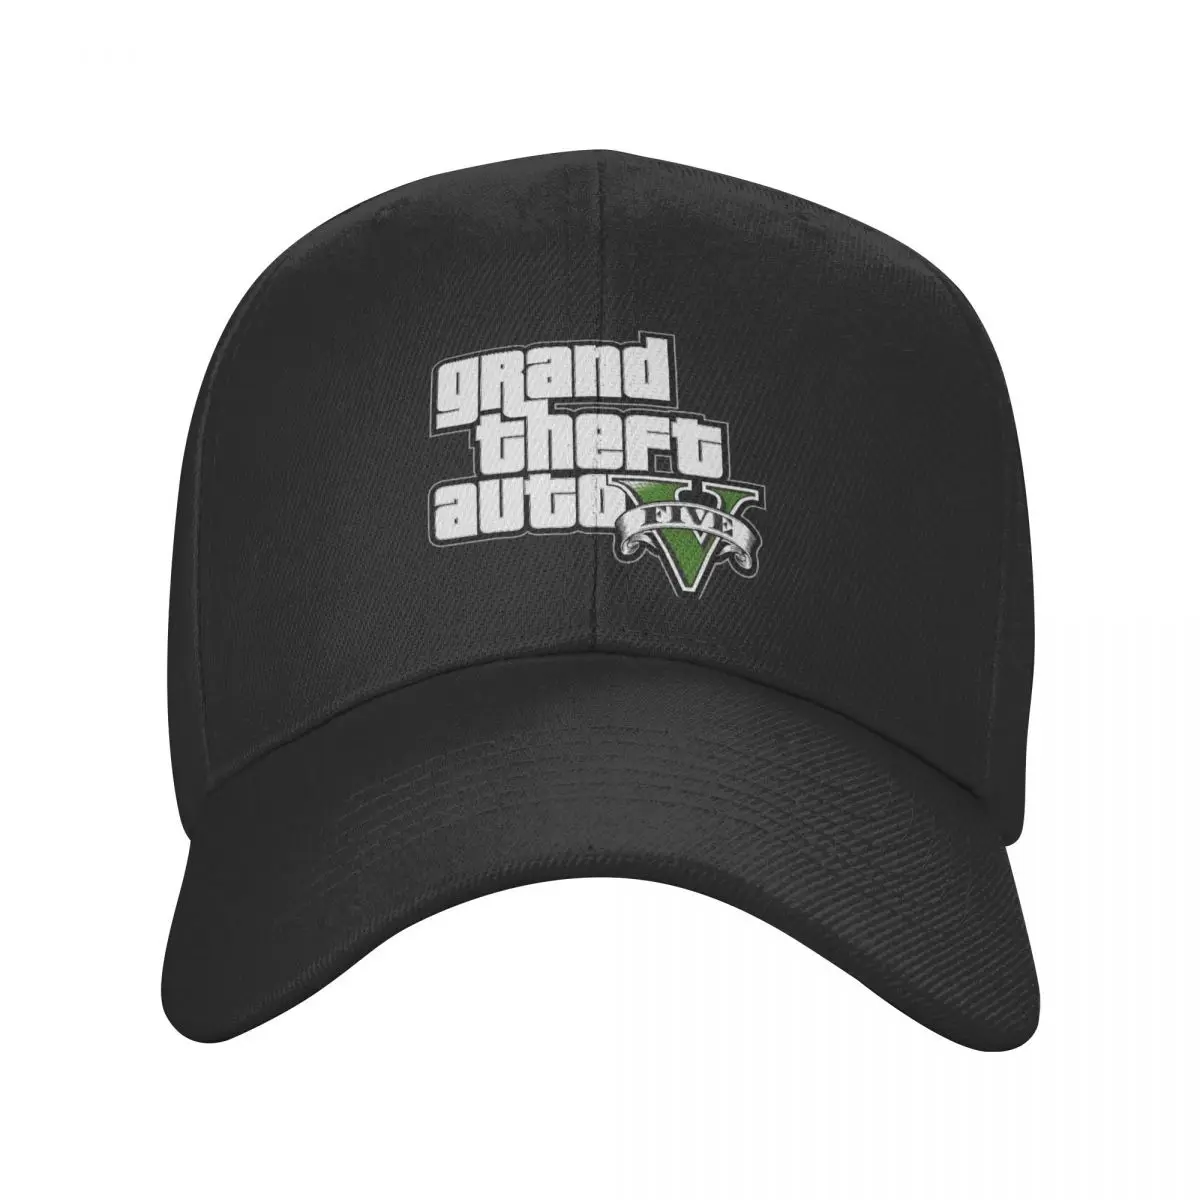 

New Gr Theft Auto Baseball Cap Adult GTA Adventure Game Adjustable Dad Hat Men Women Outdoor Snapback Summer Hats